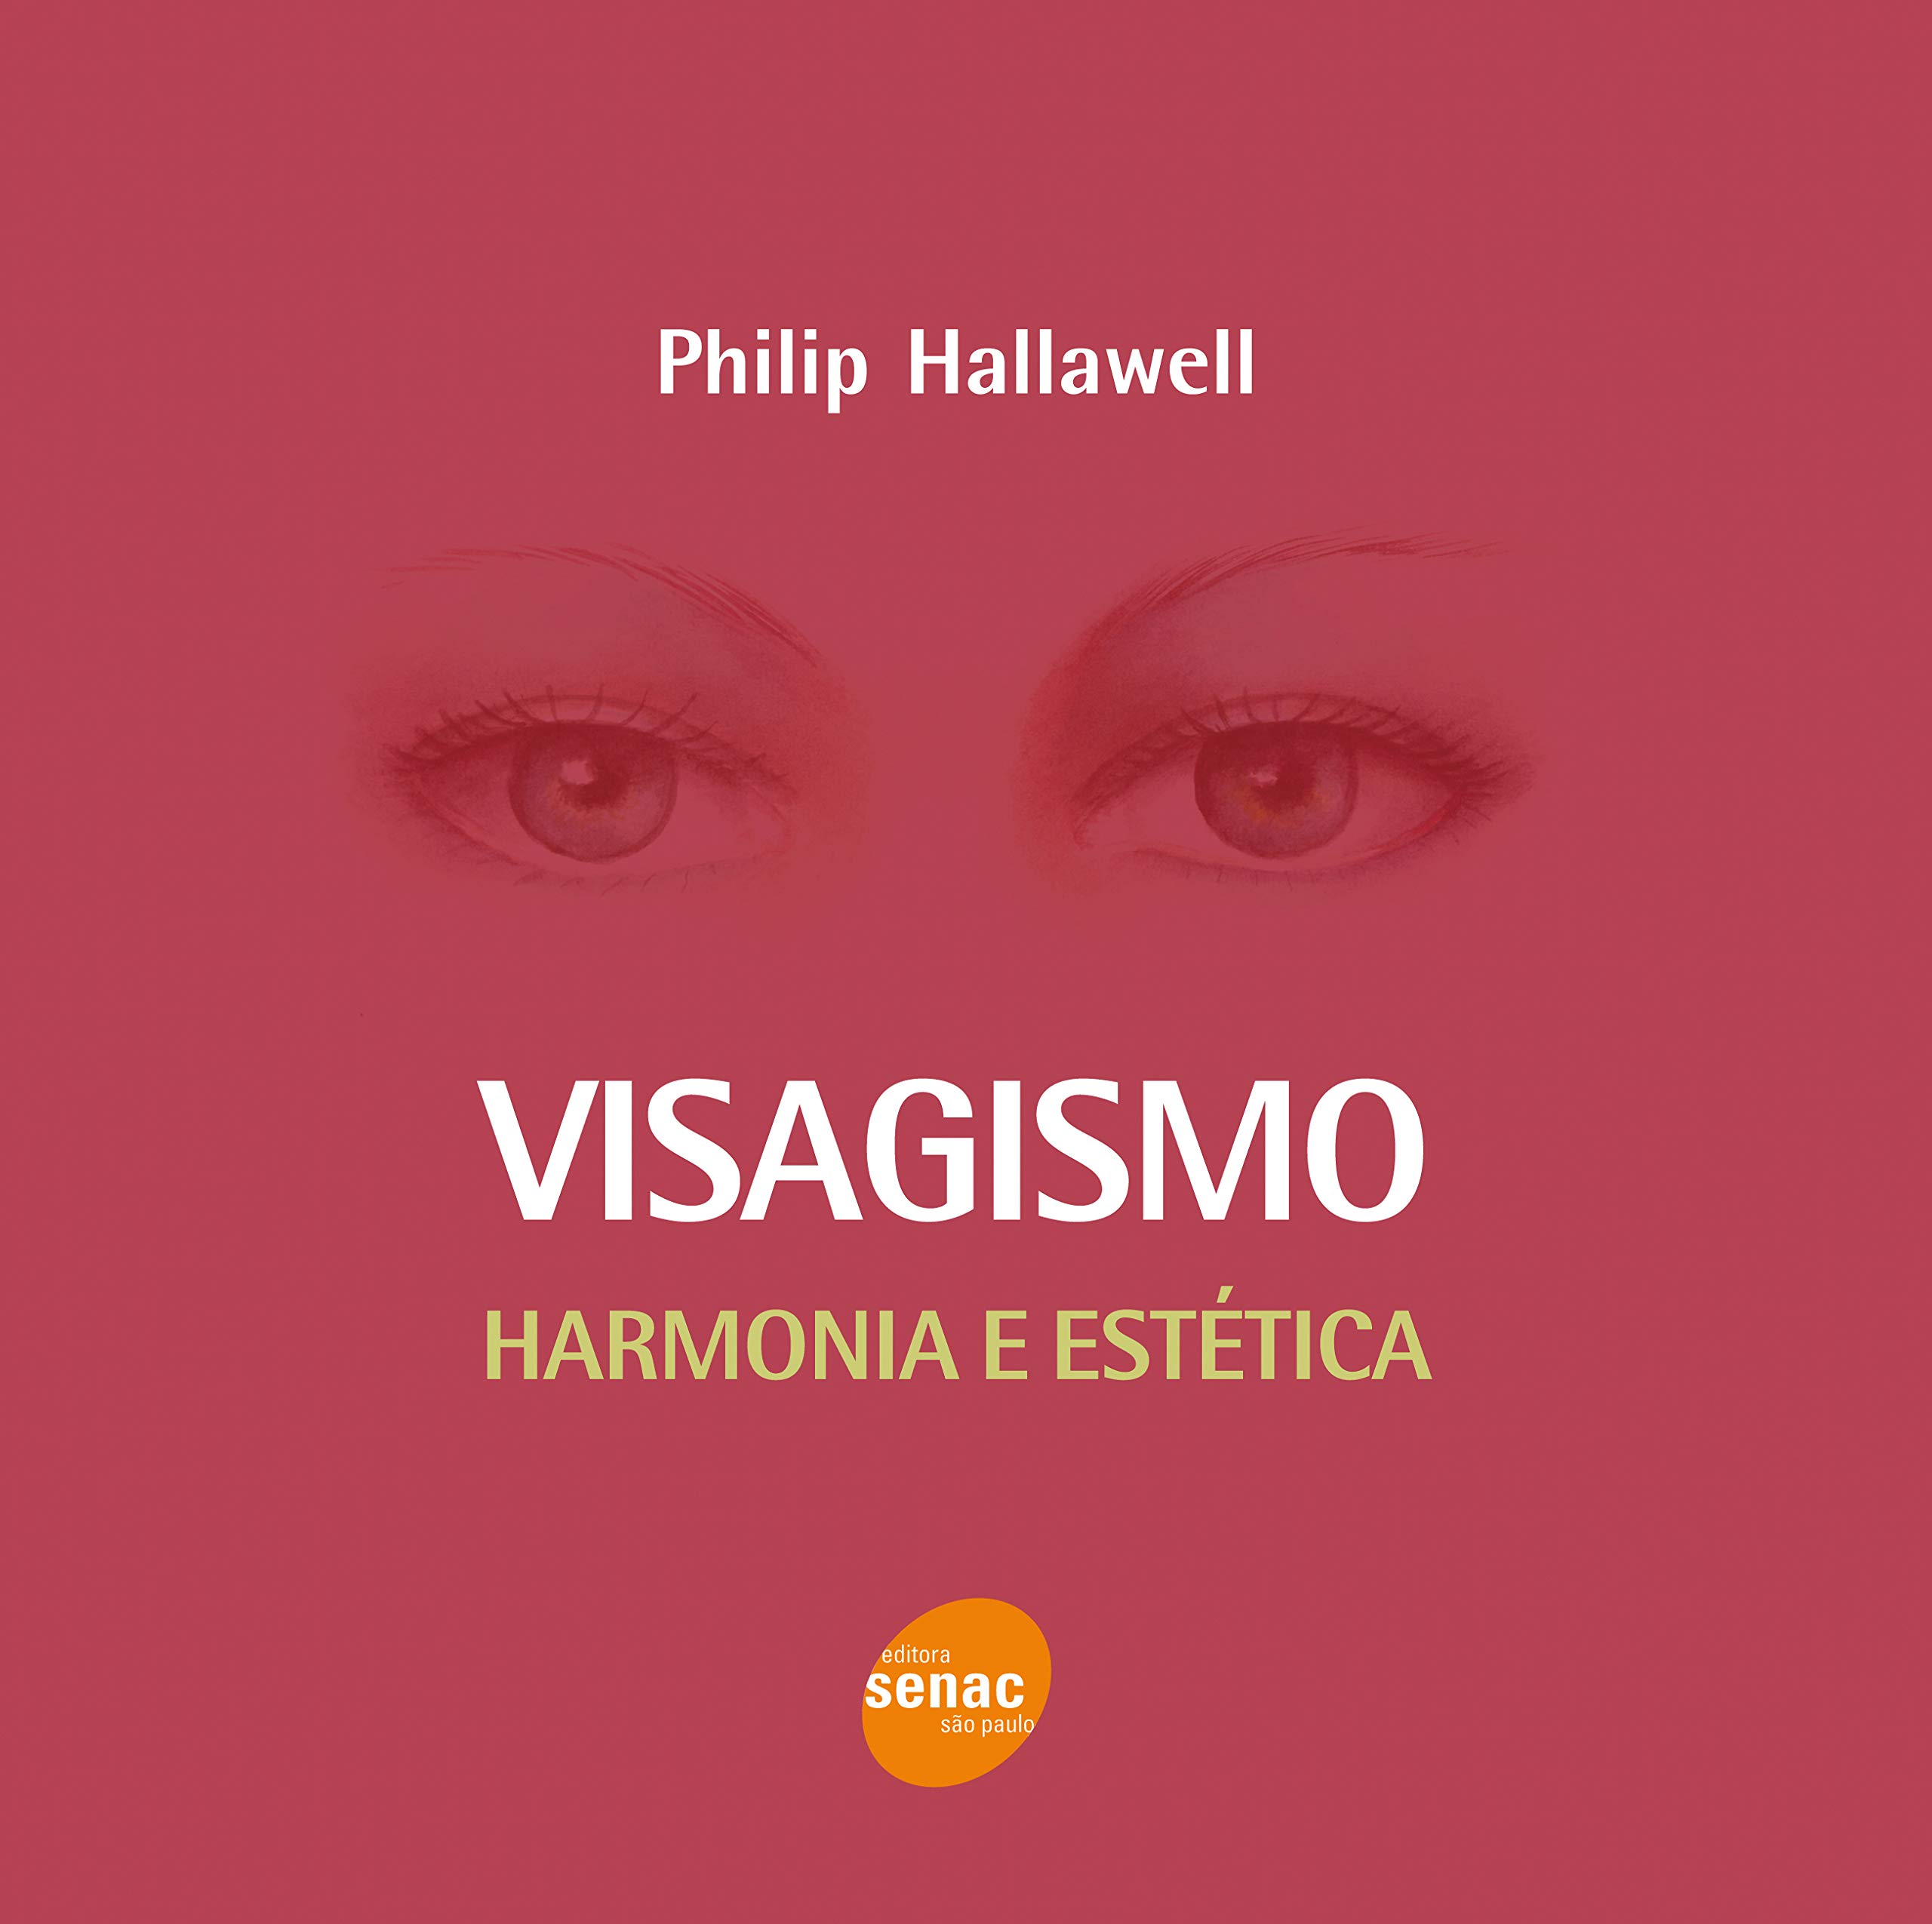 Você está visualizando atualmente Visagismo Philip Hallawell